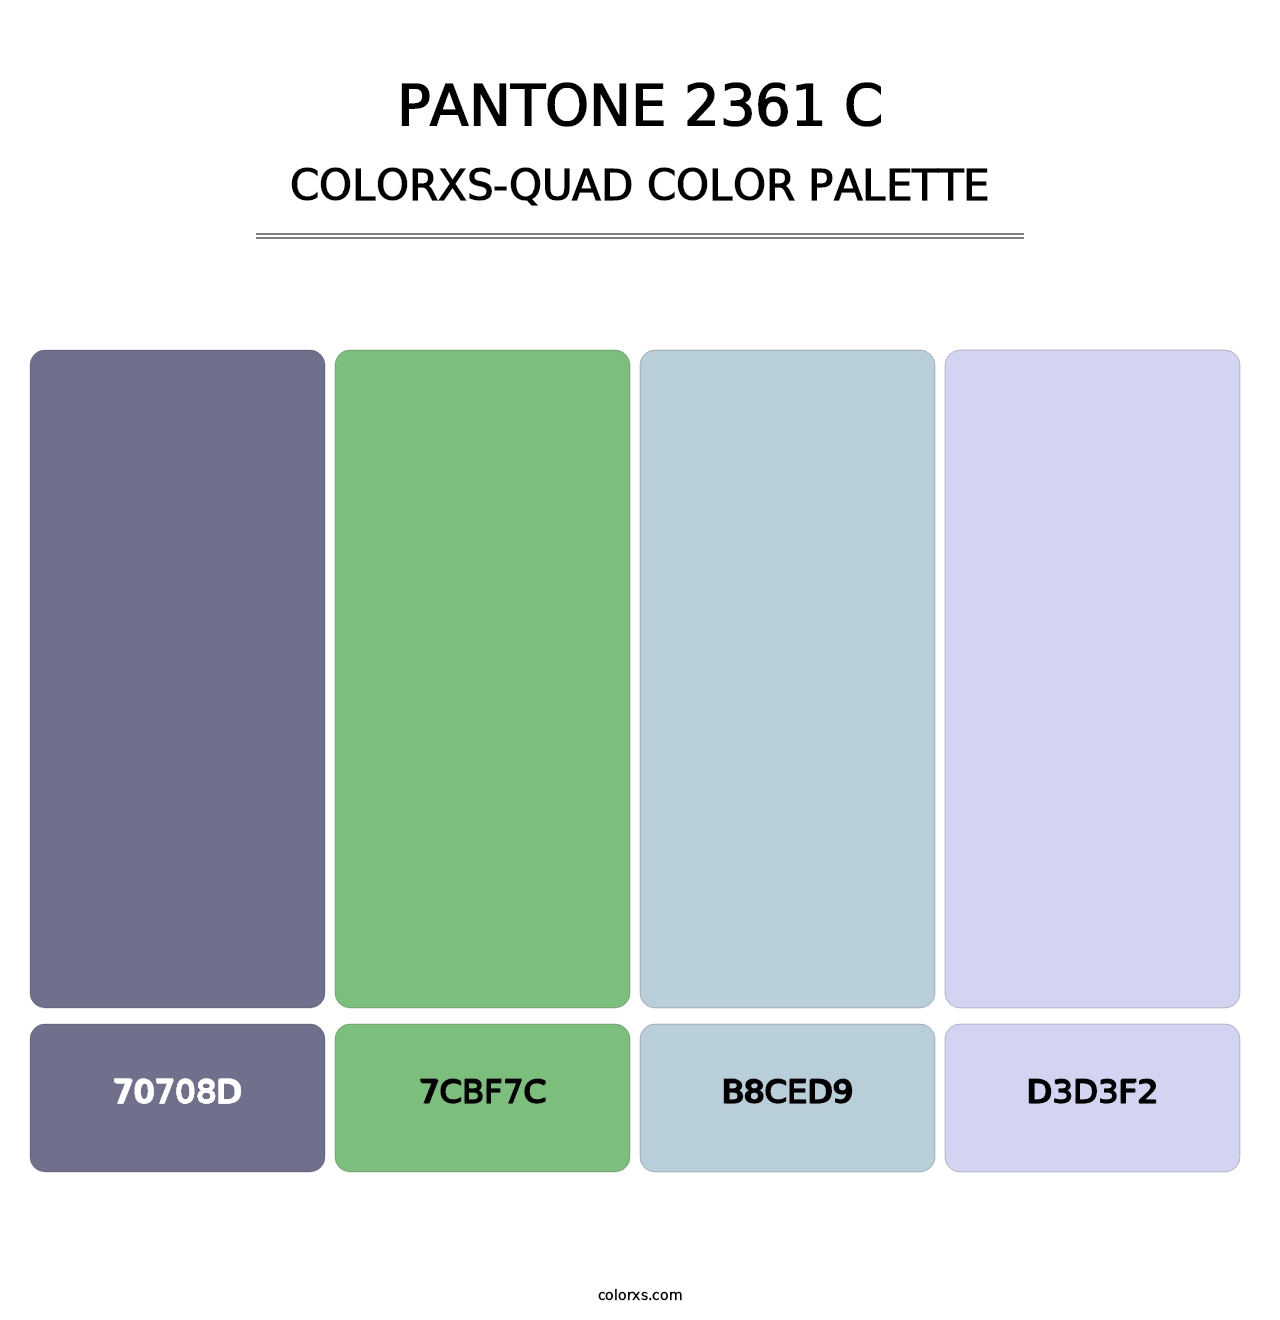 PANTONE 2361 C - Colorxs Quad Palette